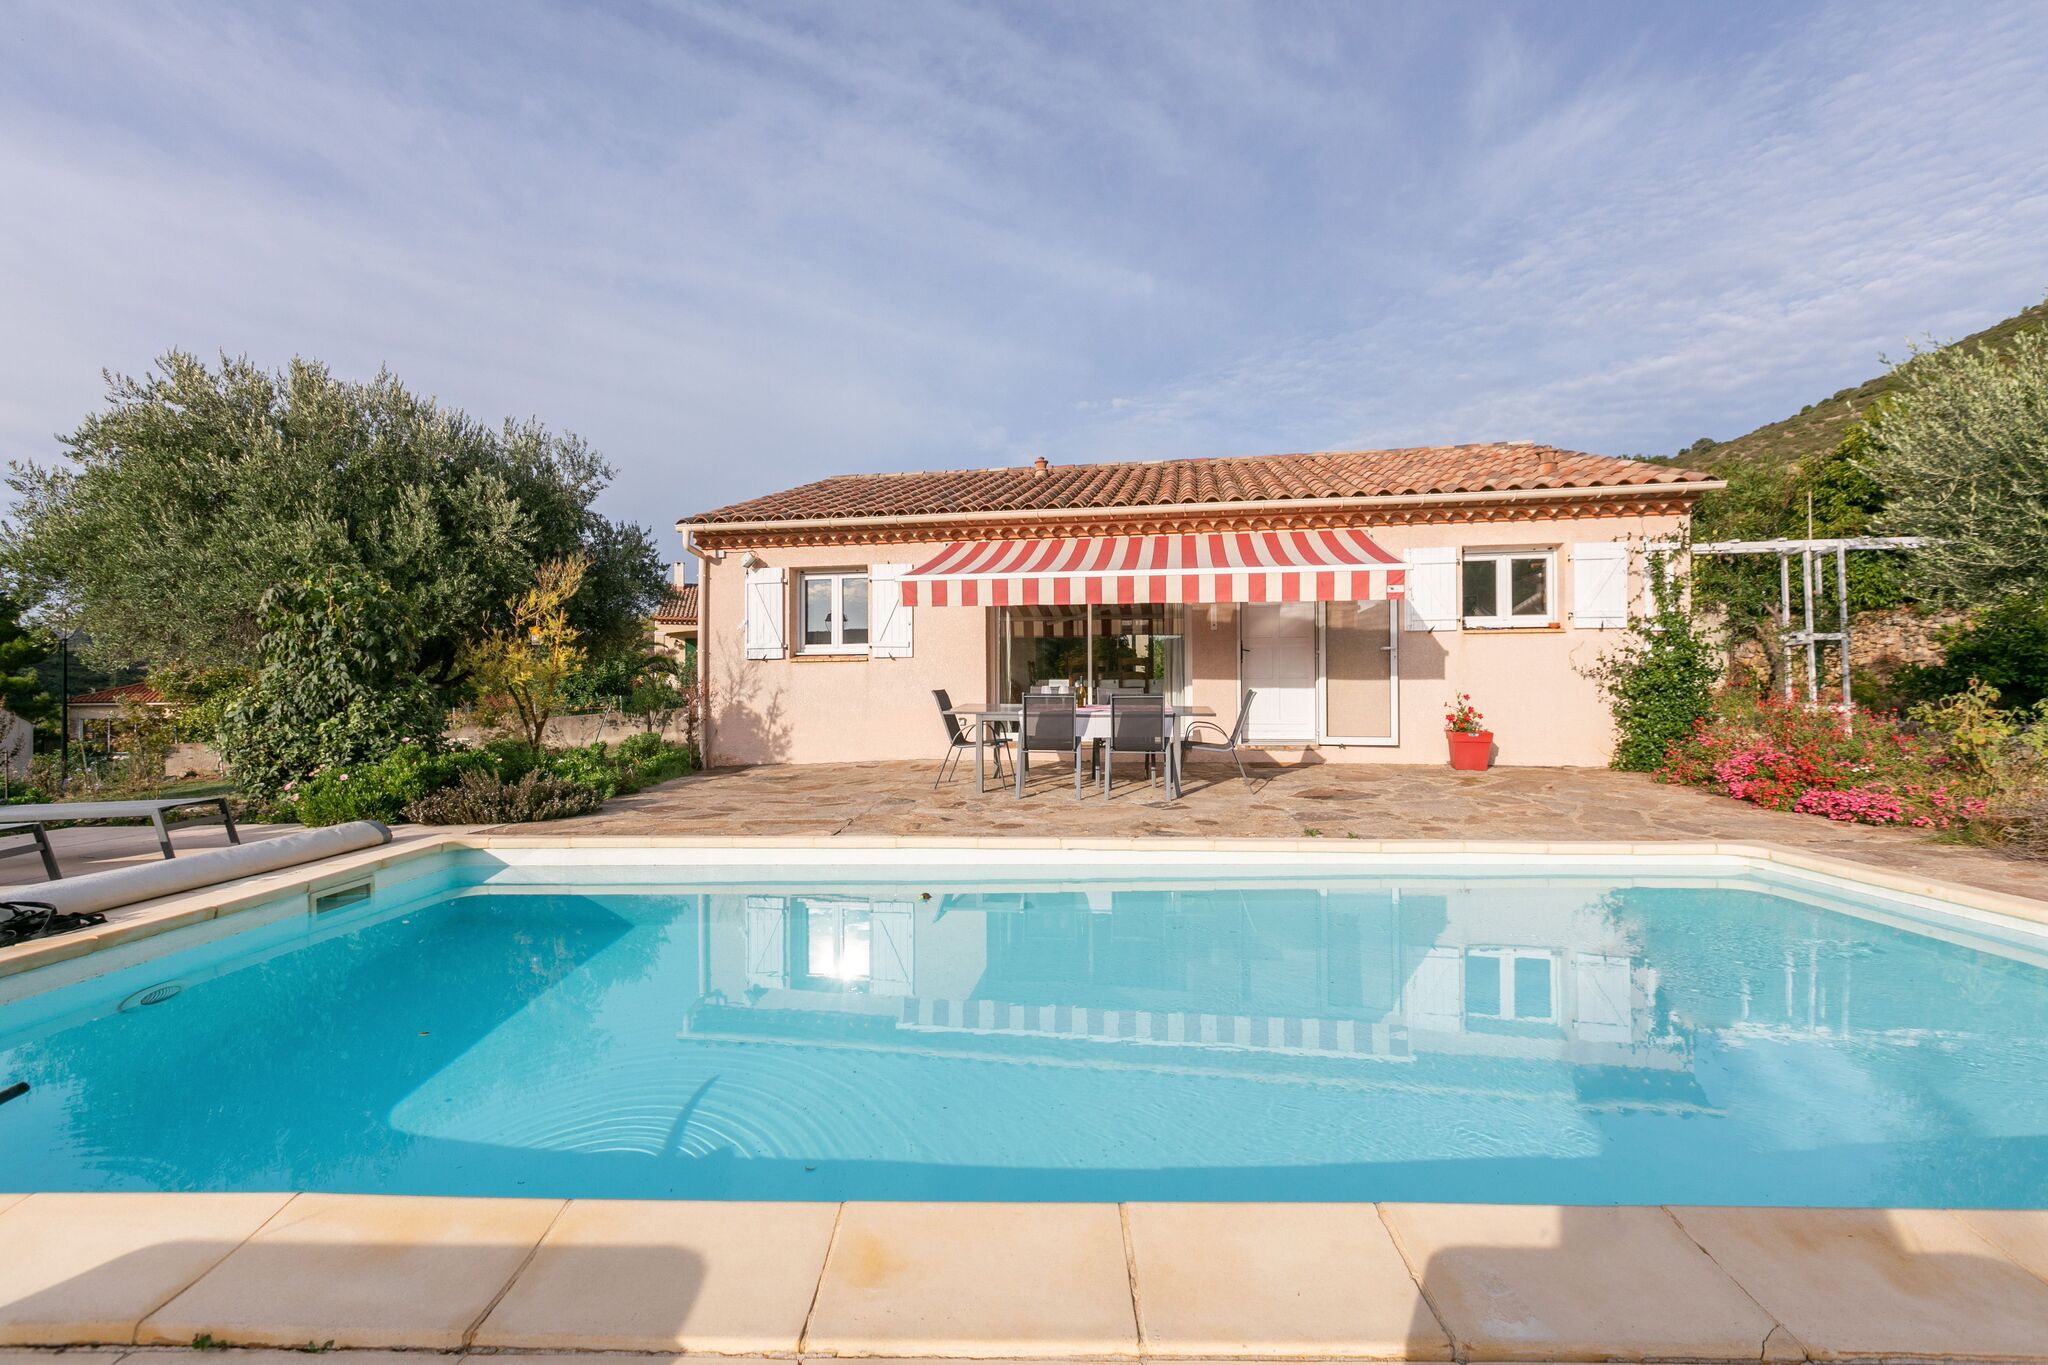 Maison dans le sud de la France avec piscine privée et clim